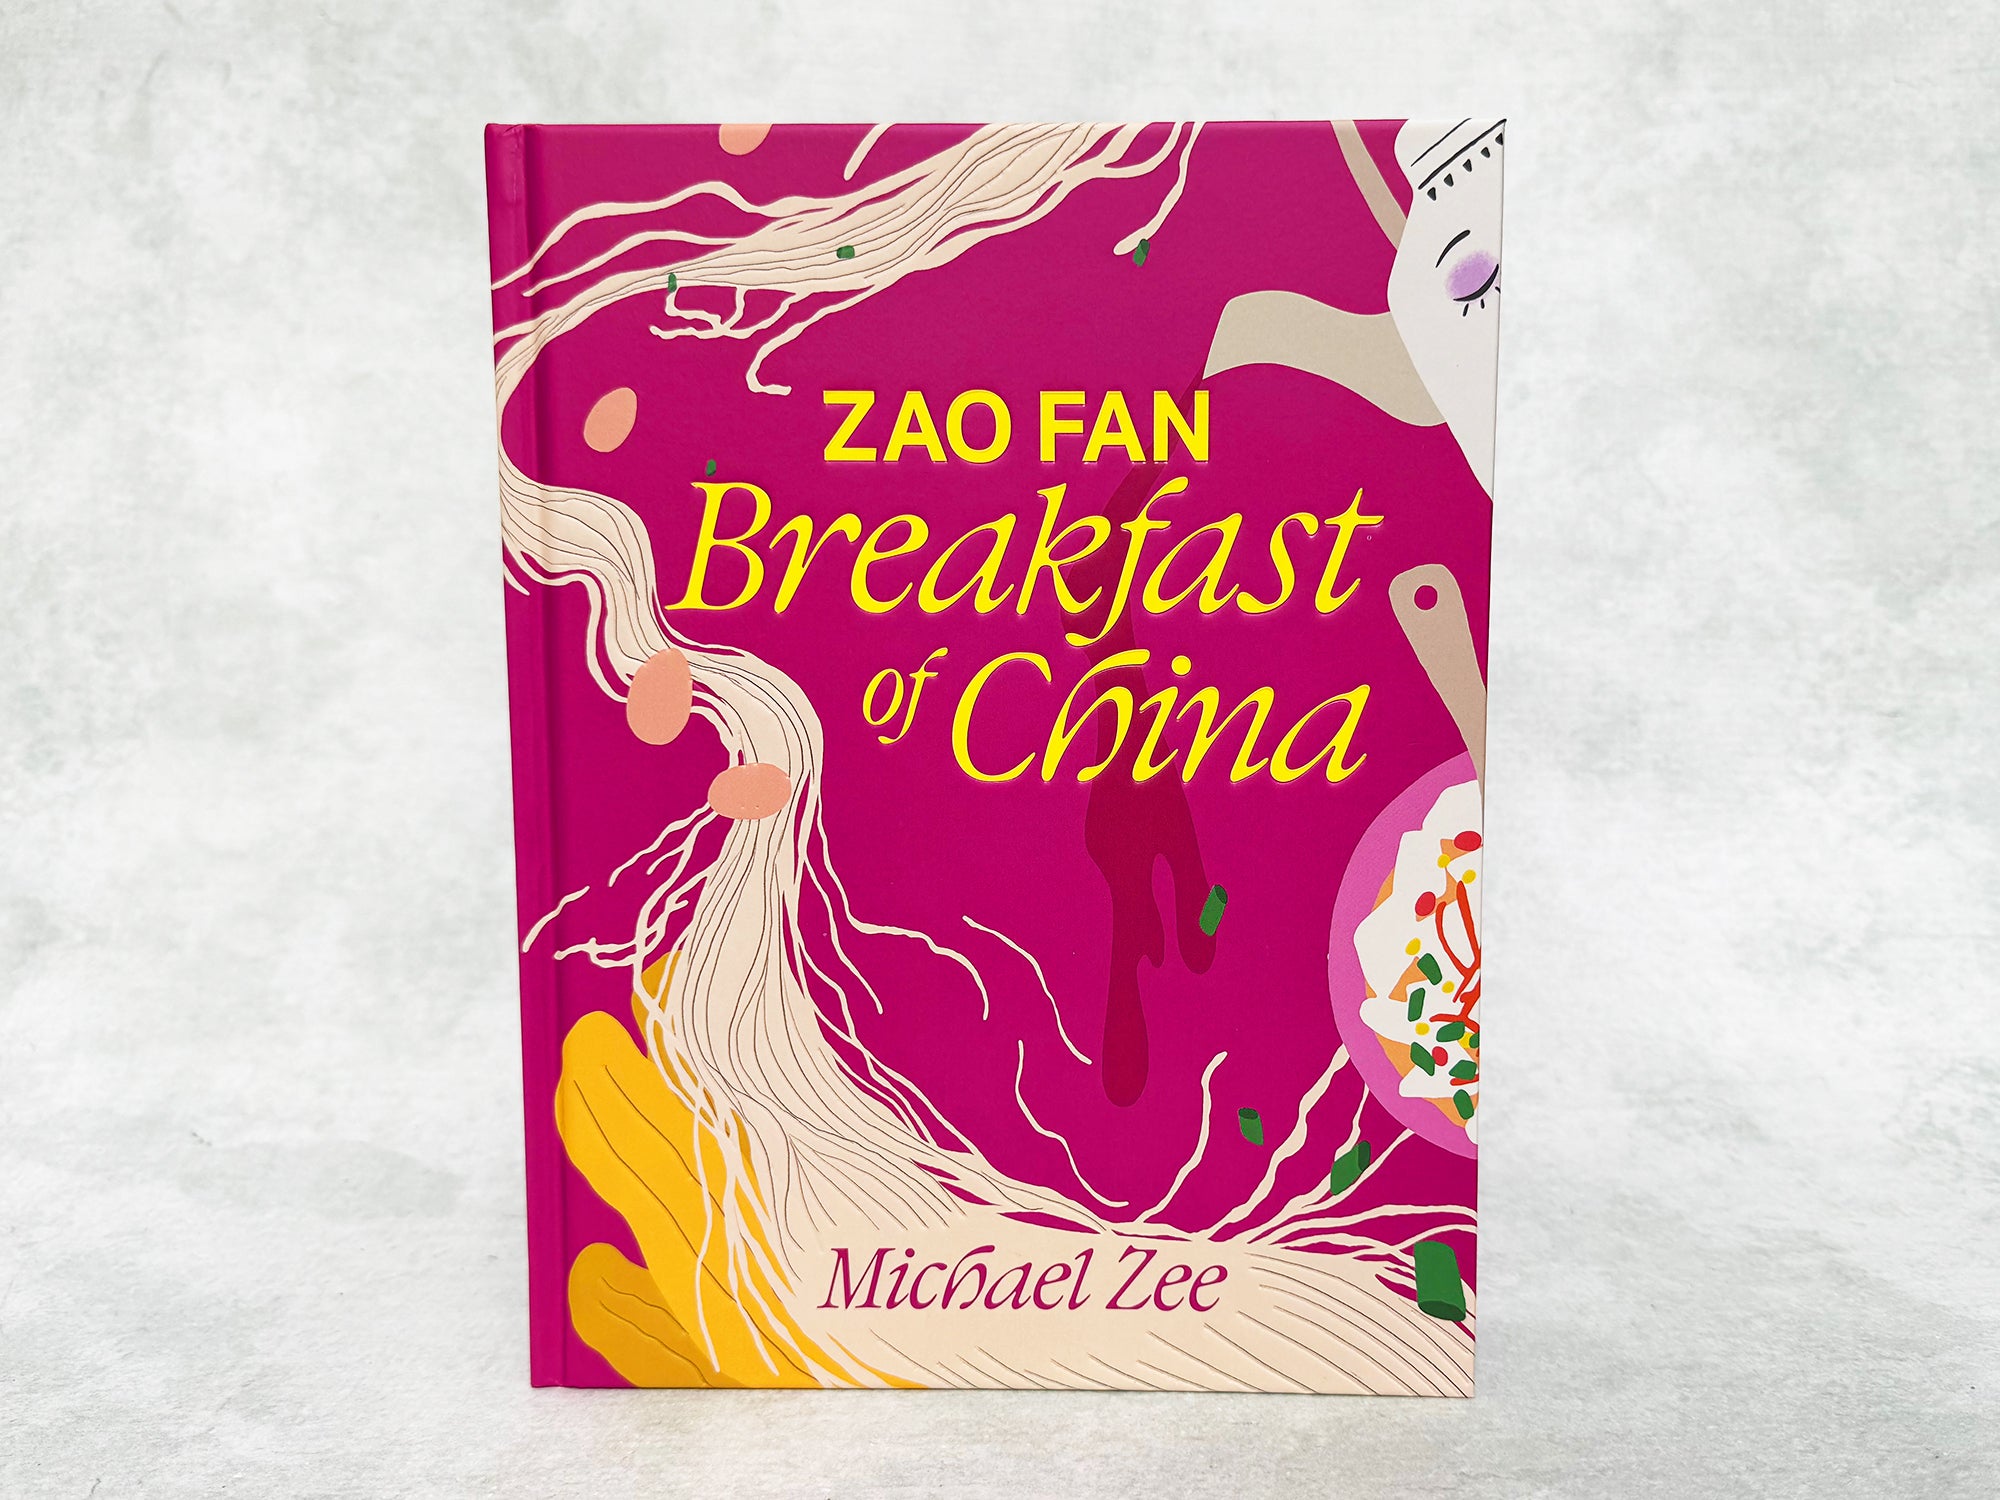 Zao Fan: Breakfast of China (Cookbook by Michael Zee)